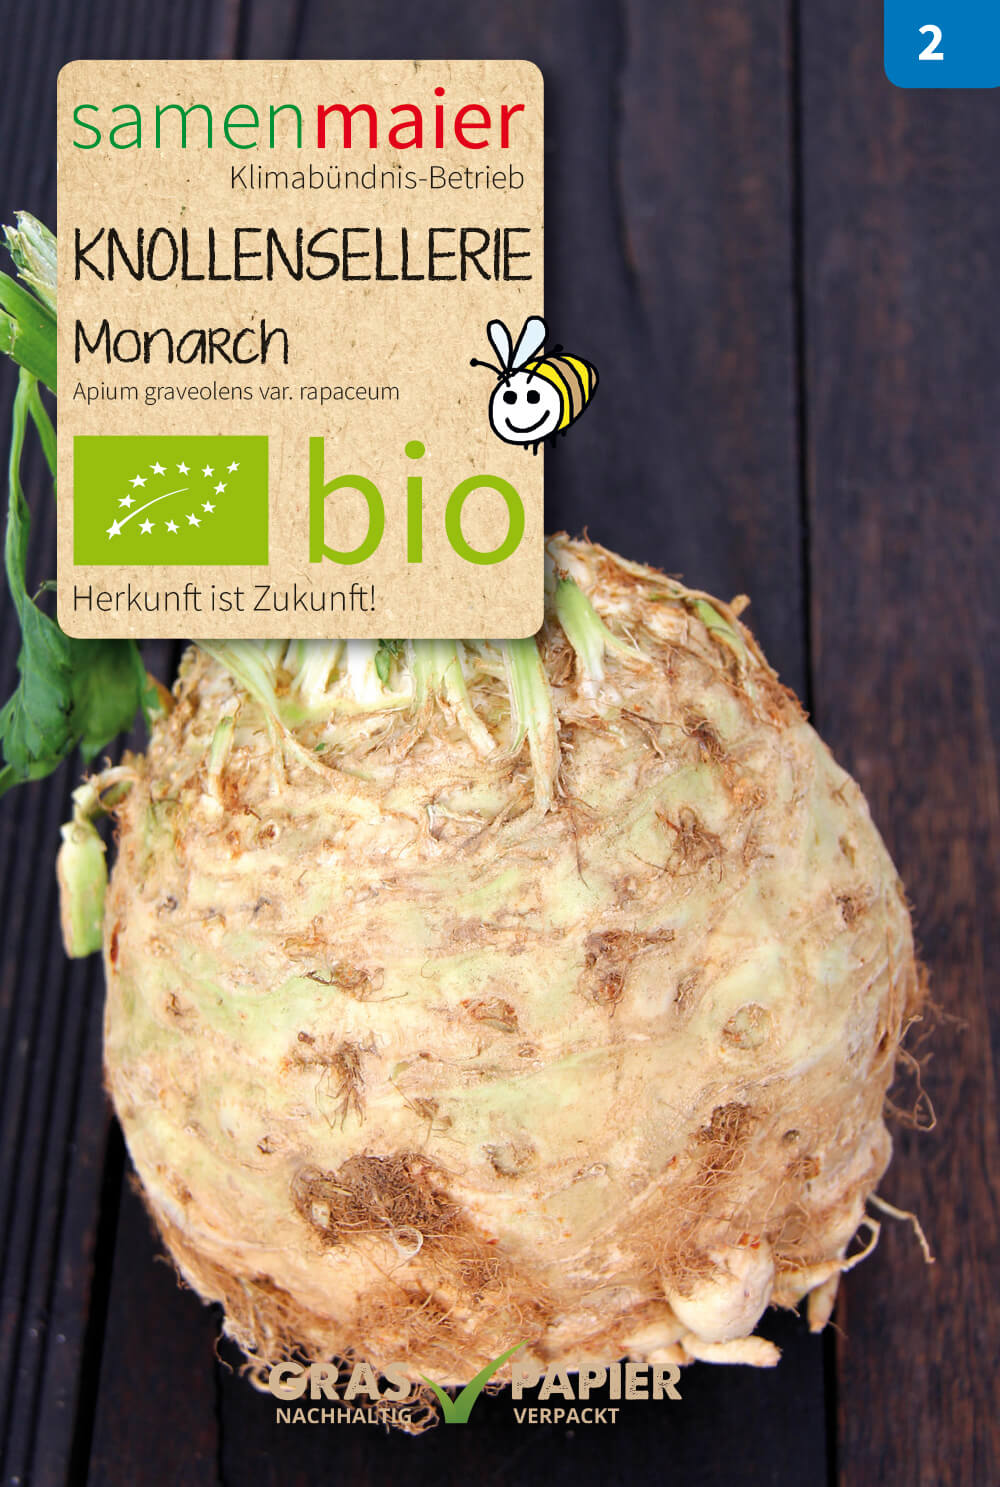 Beet-Box "Für Suppenköche" | BIO Gemüsesamen-Sets von Samen Maier